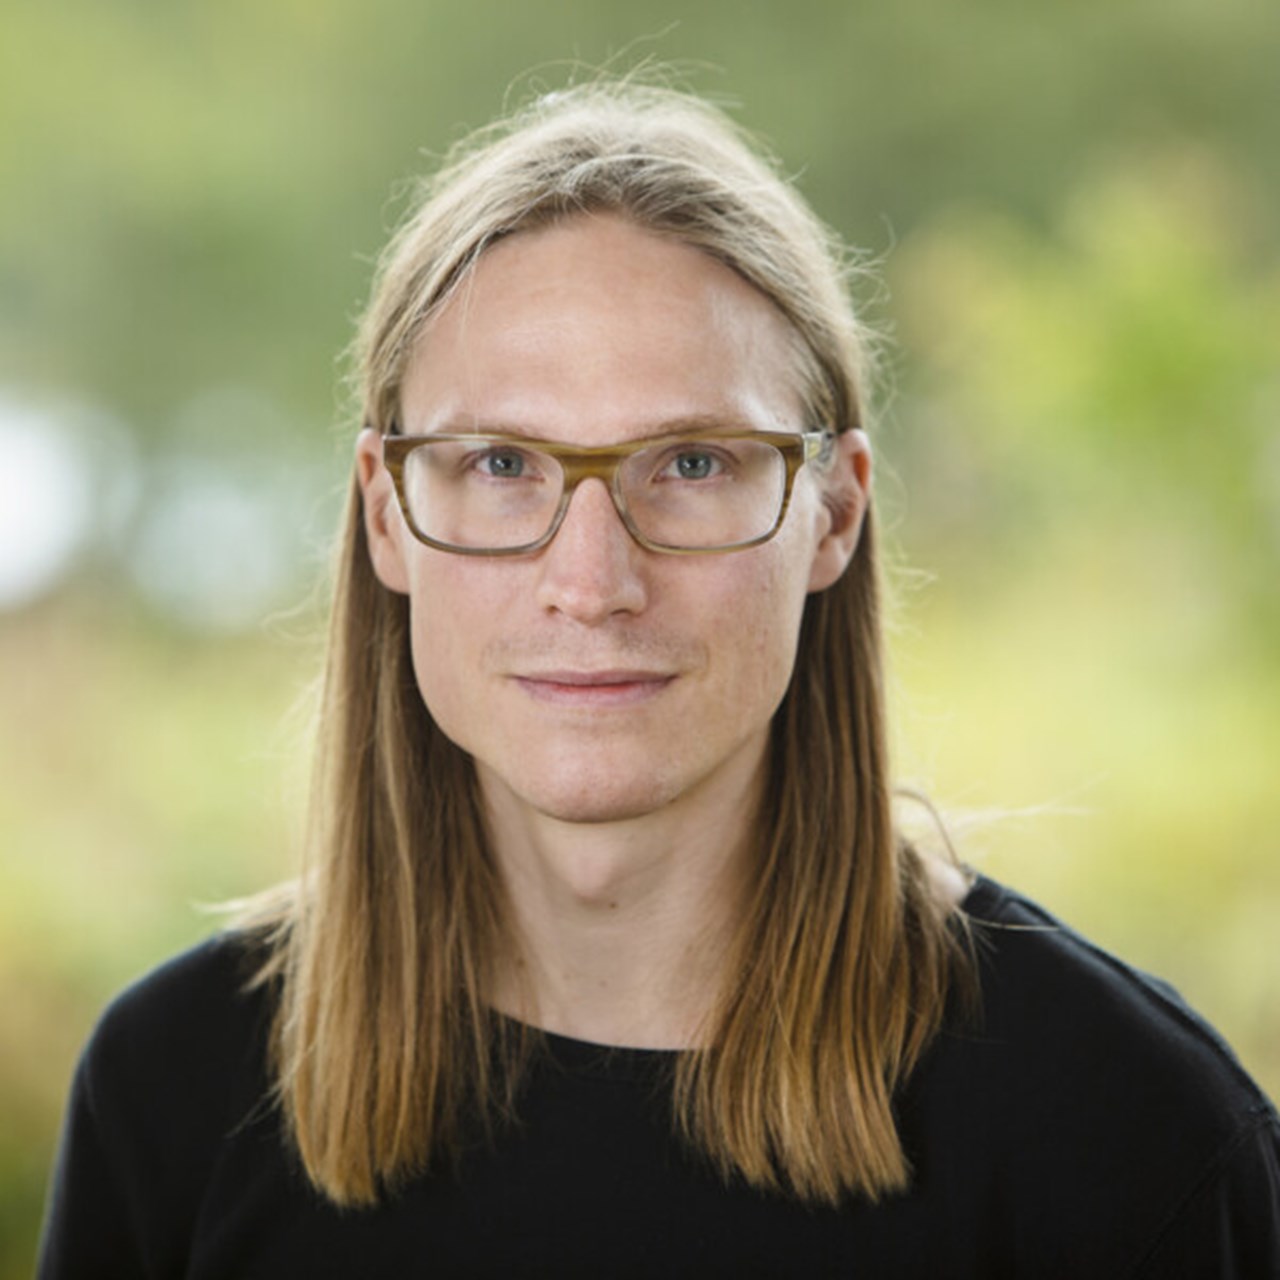 Porträtt på Erik Lundgren, Doktorand vid Institutionen för tillämpad utbildningsvetenskap, Umeå universitet